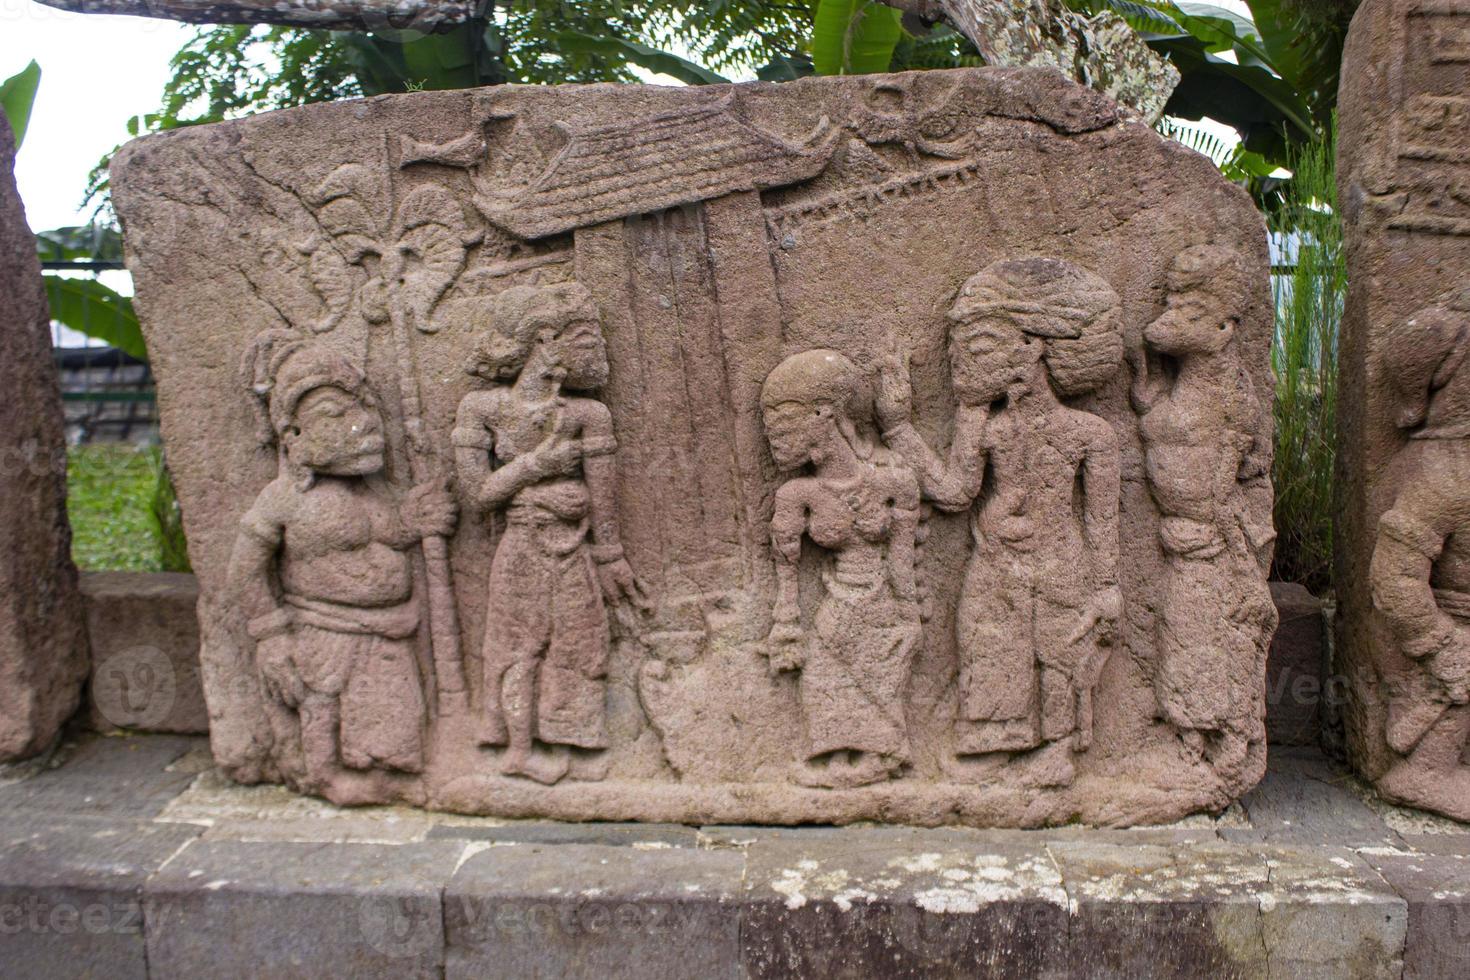 templo de sukuh ou candi sukuh, relevos no templo de sukuh.ancient erótico candi sukuh-hindu templo em java central, indonésia. o templo é um templo hindu javanês localizado no monte lawu foto